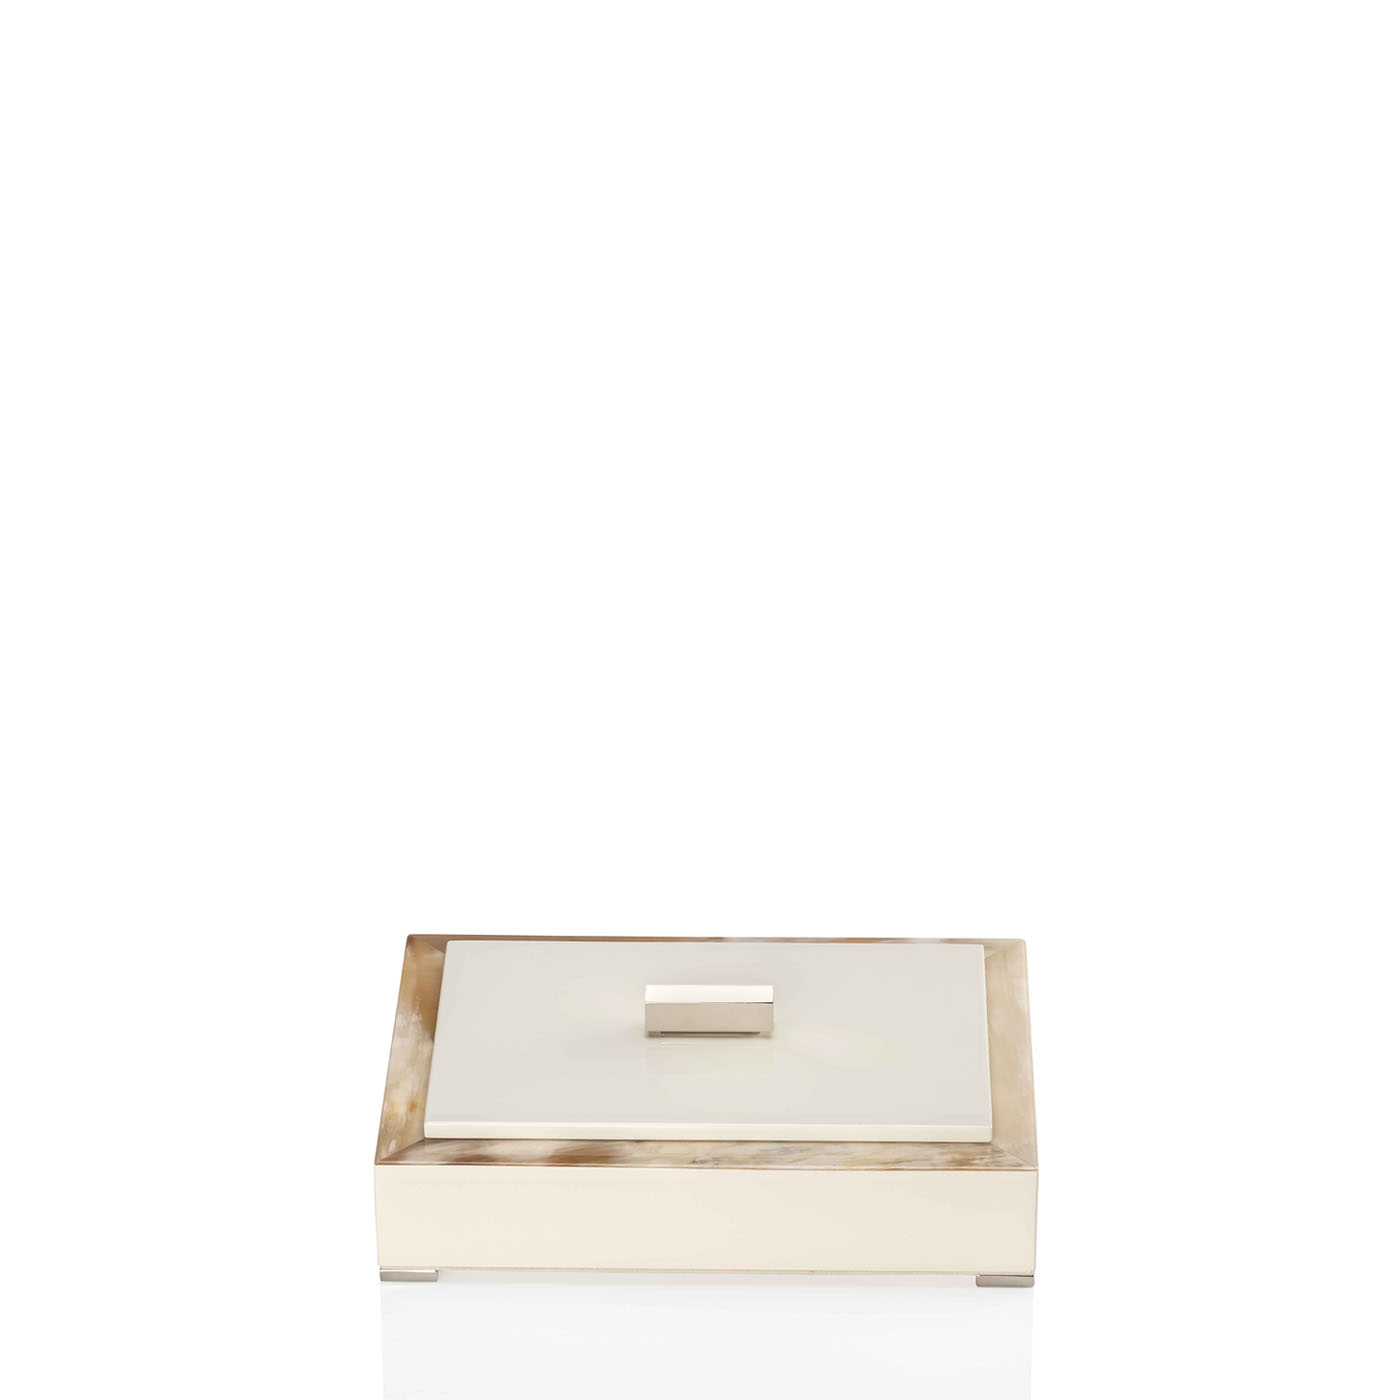 Cornici e scatole - Selene Scatole in corno e legno laccato avorio 5310C - Arcahorn